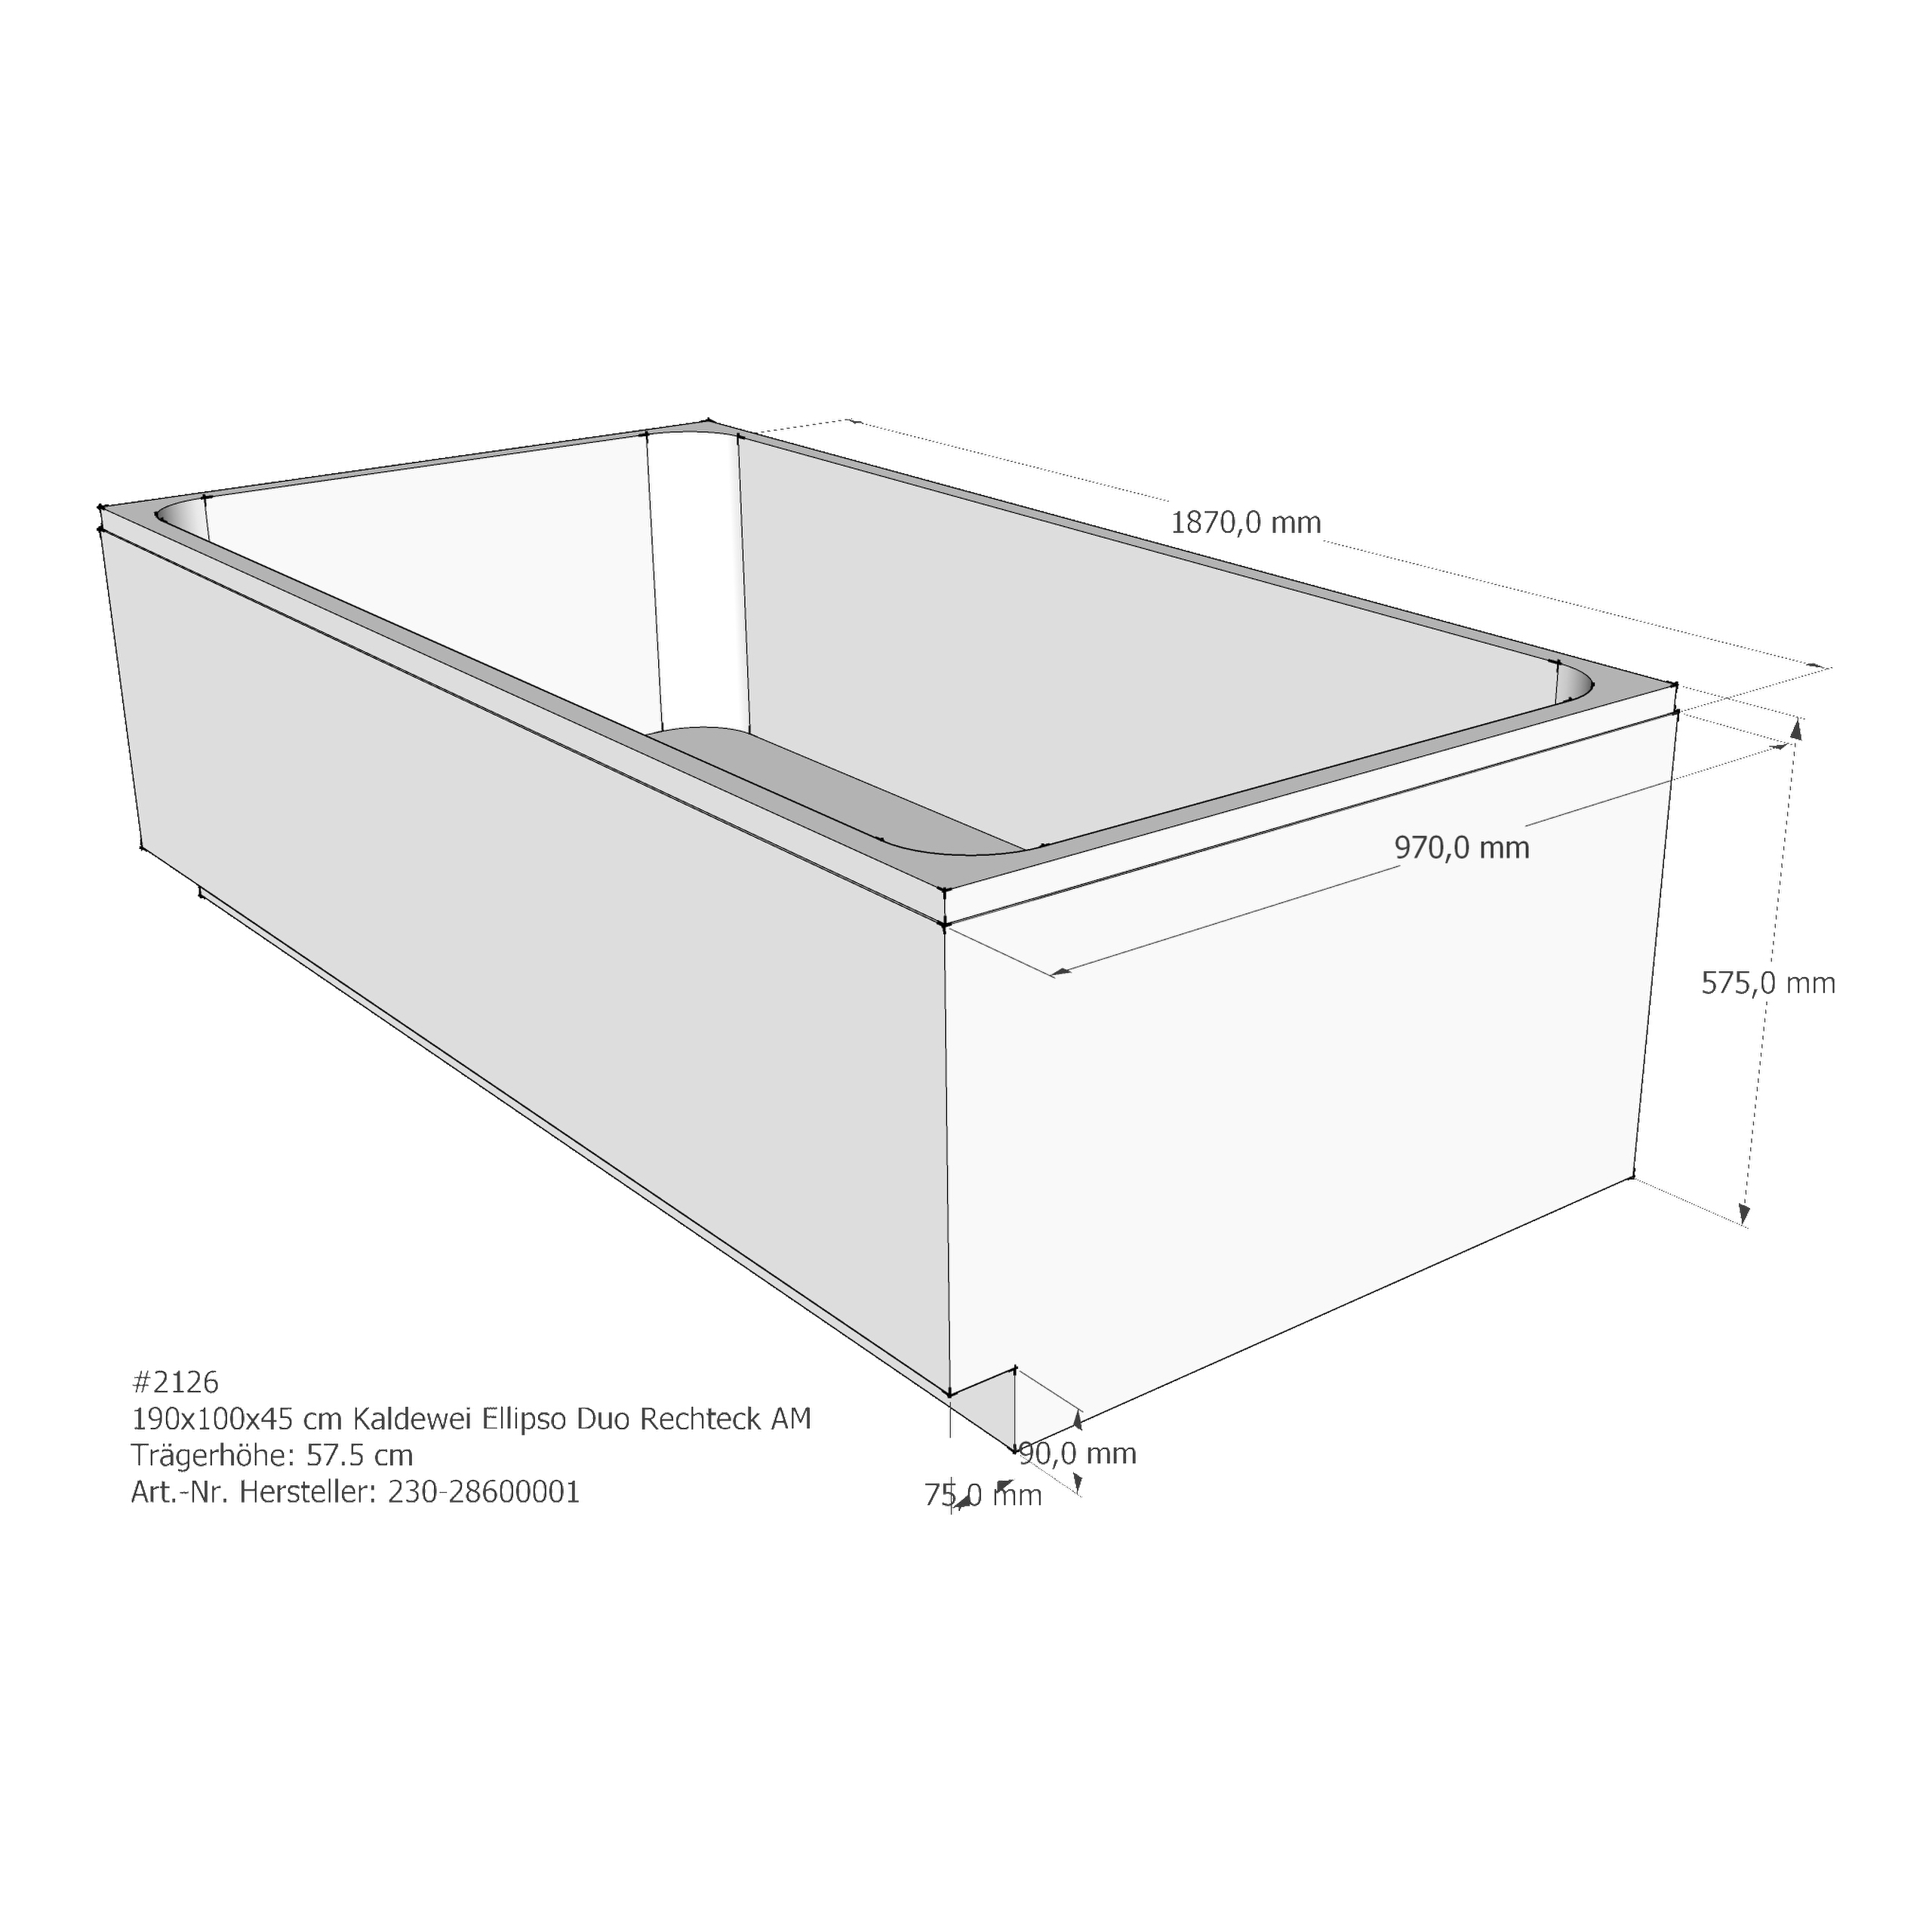 Badewannenträger für Kaldewei Ellipso Duo 190 × 100 × 45 cm